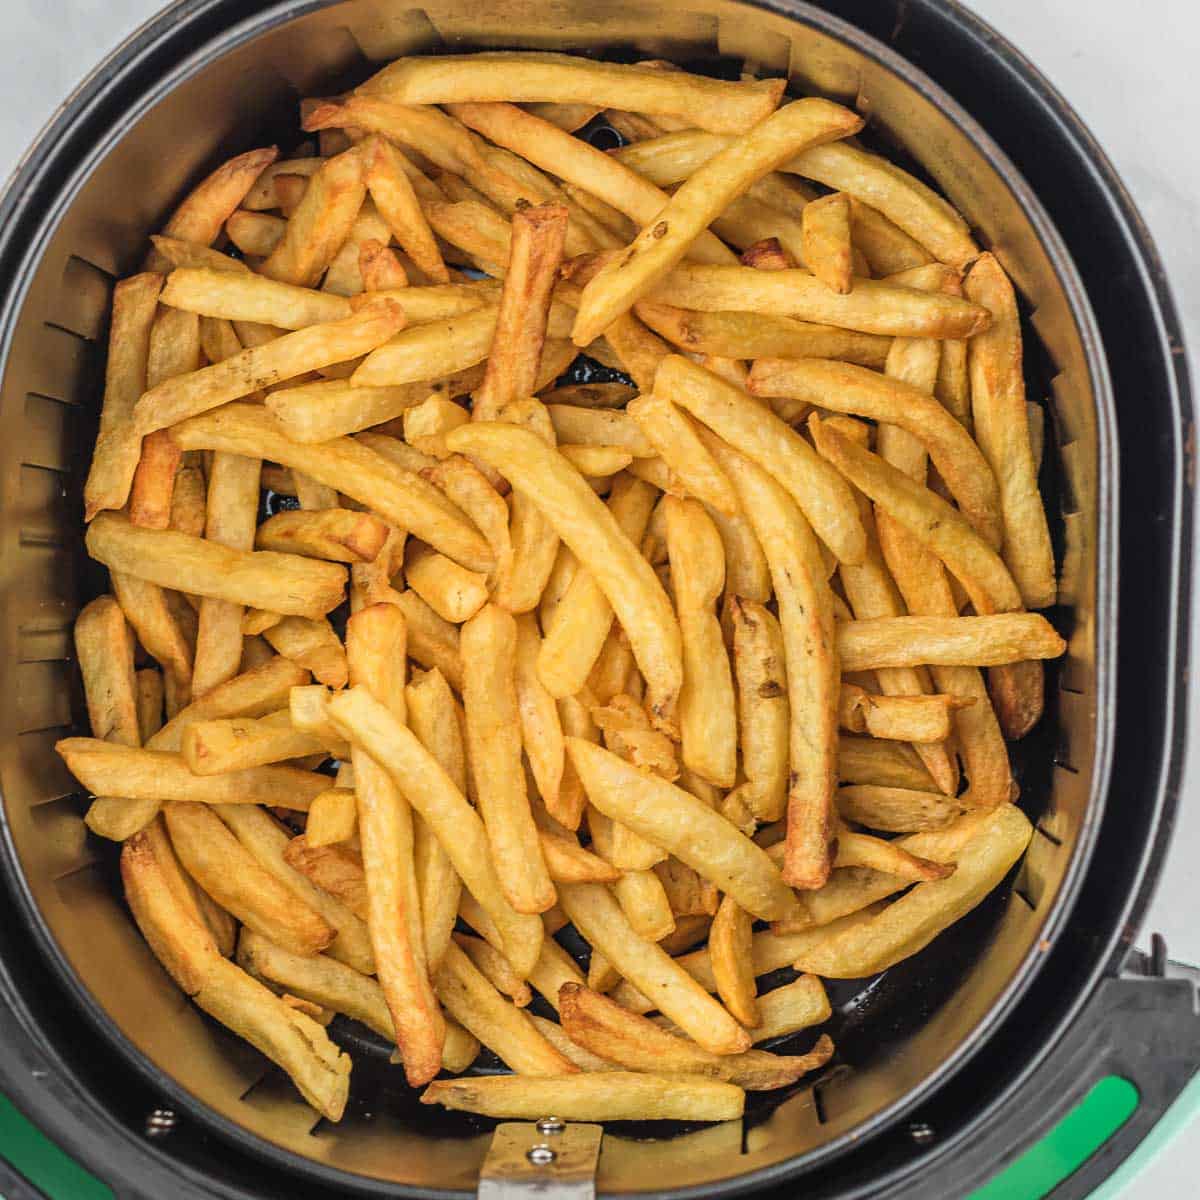 fries inside of an air fryer basket